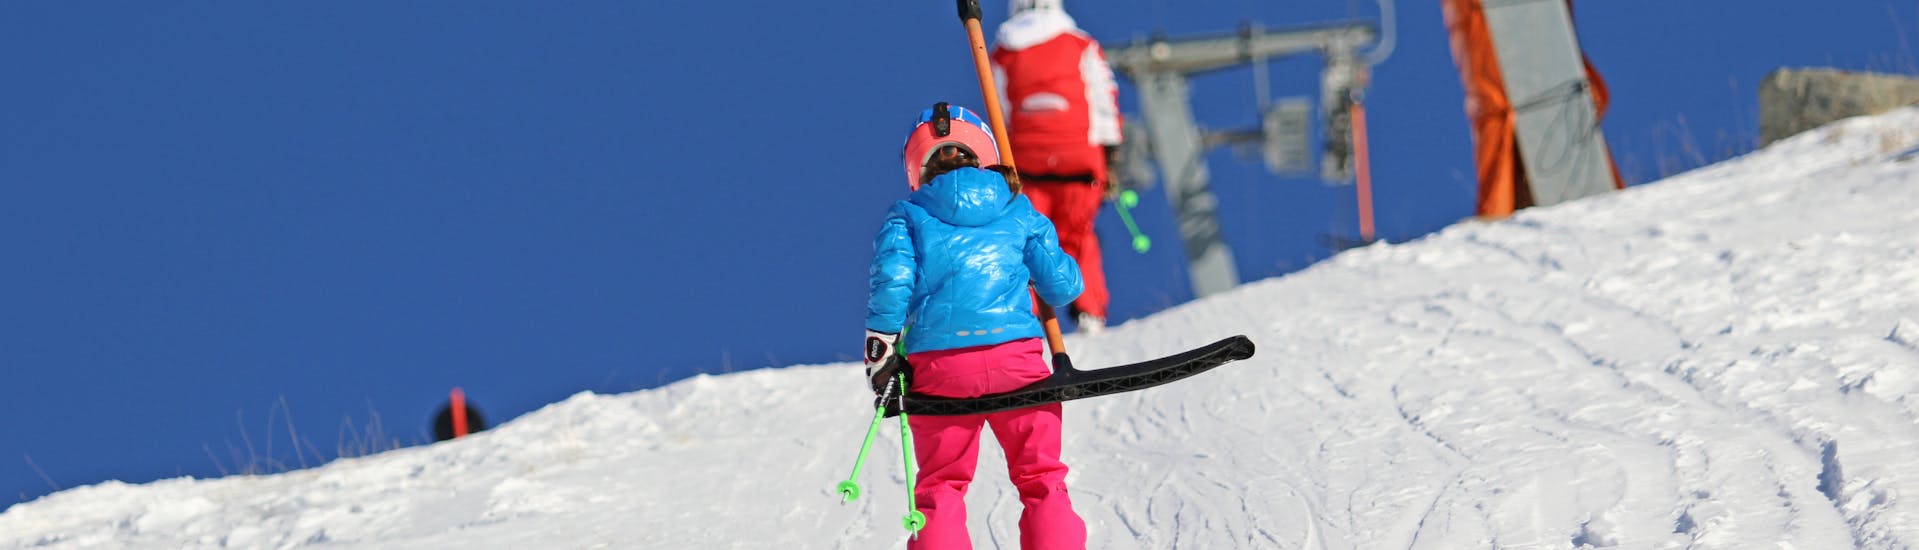 Cours de ski Enfants (4-14 ans) + Équipement pour Débutants - Nauders.